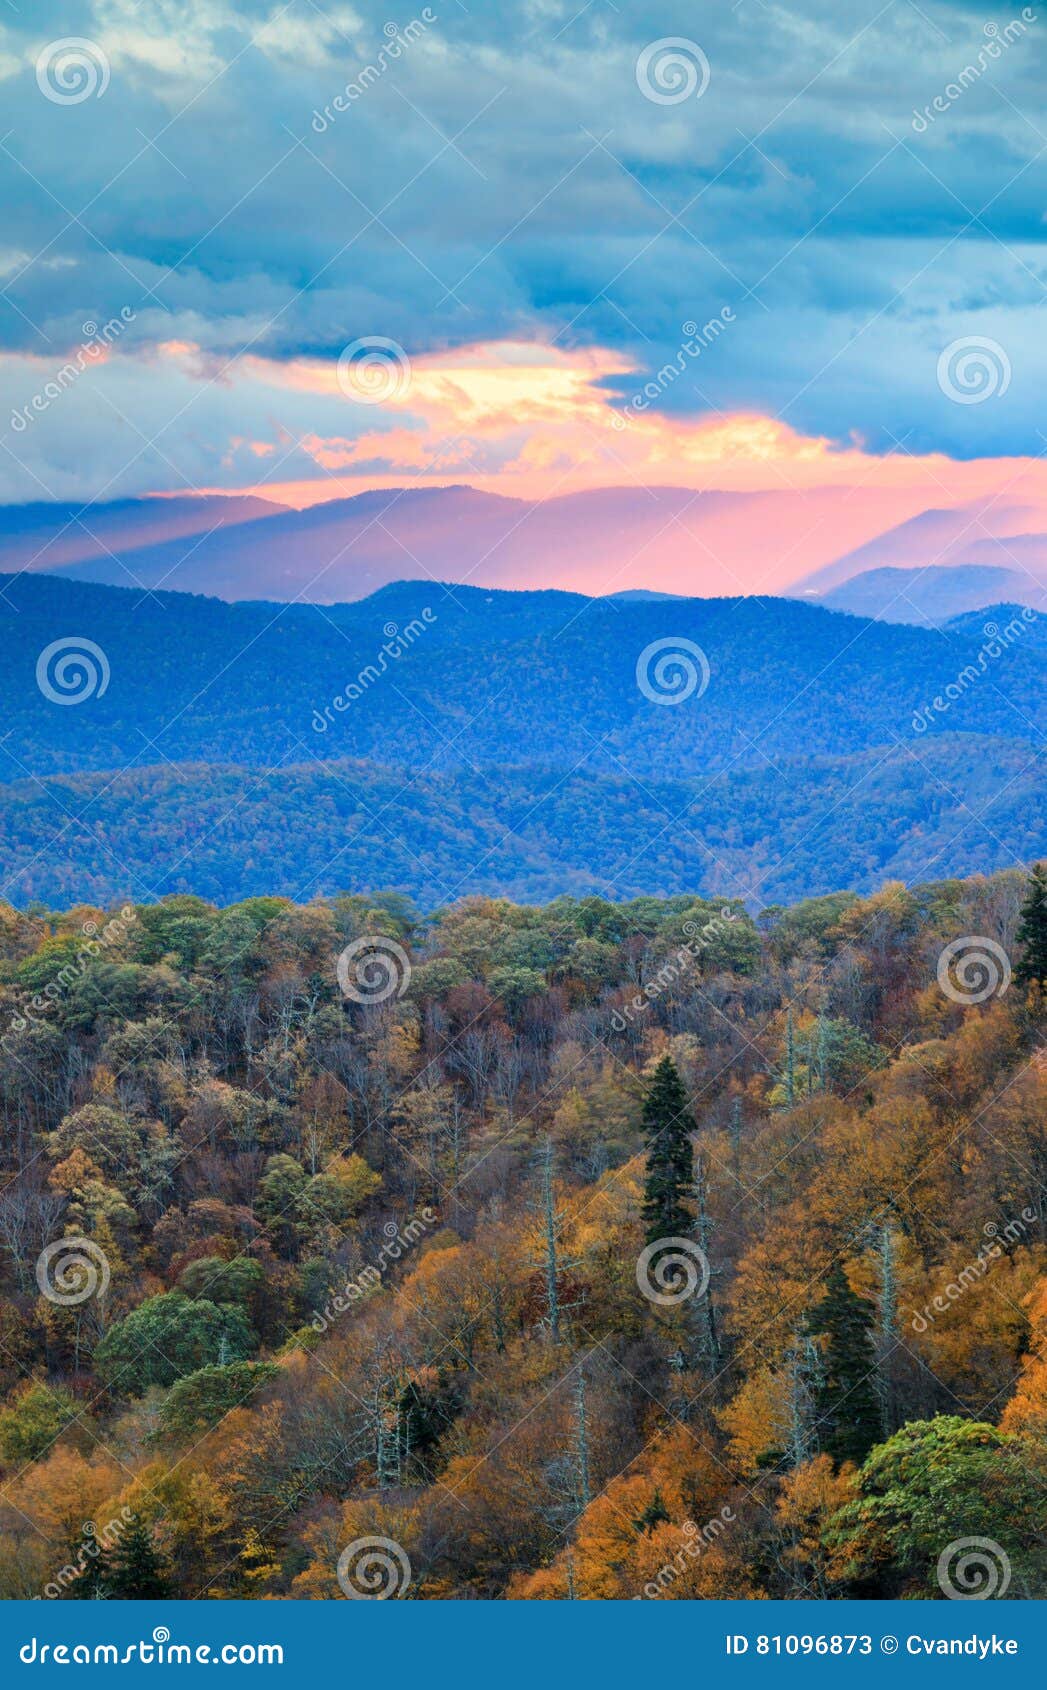 Sunrise Blue Ridge Mountains North Carolina Stock Image Image Of